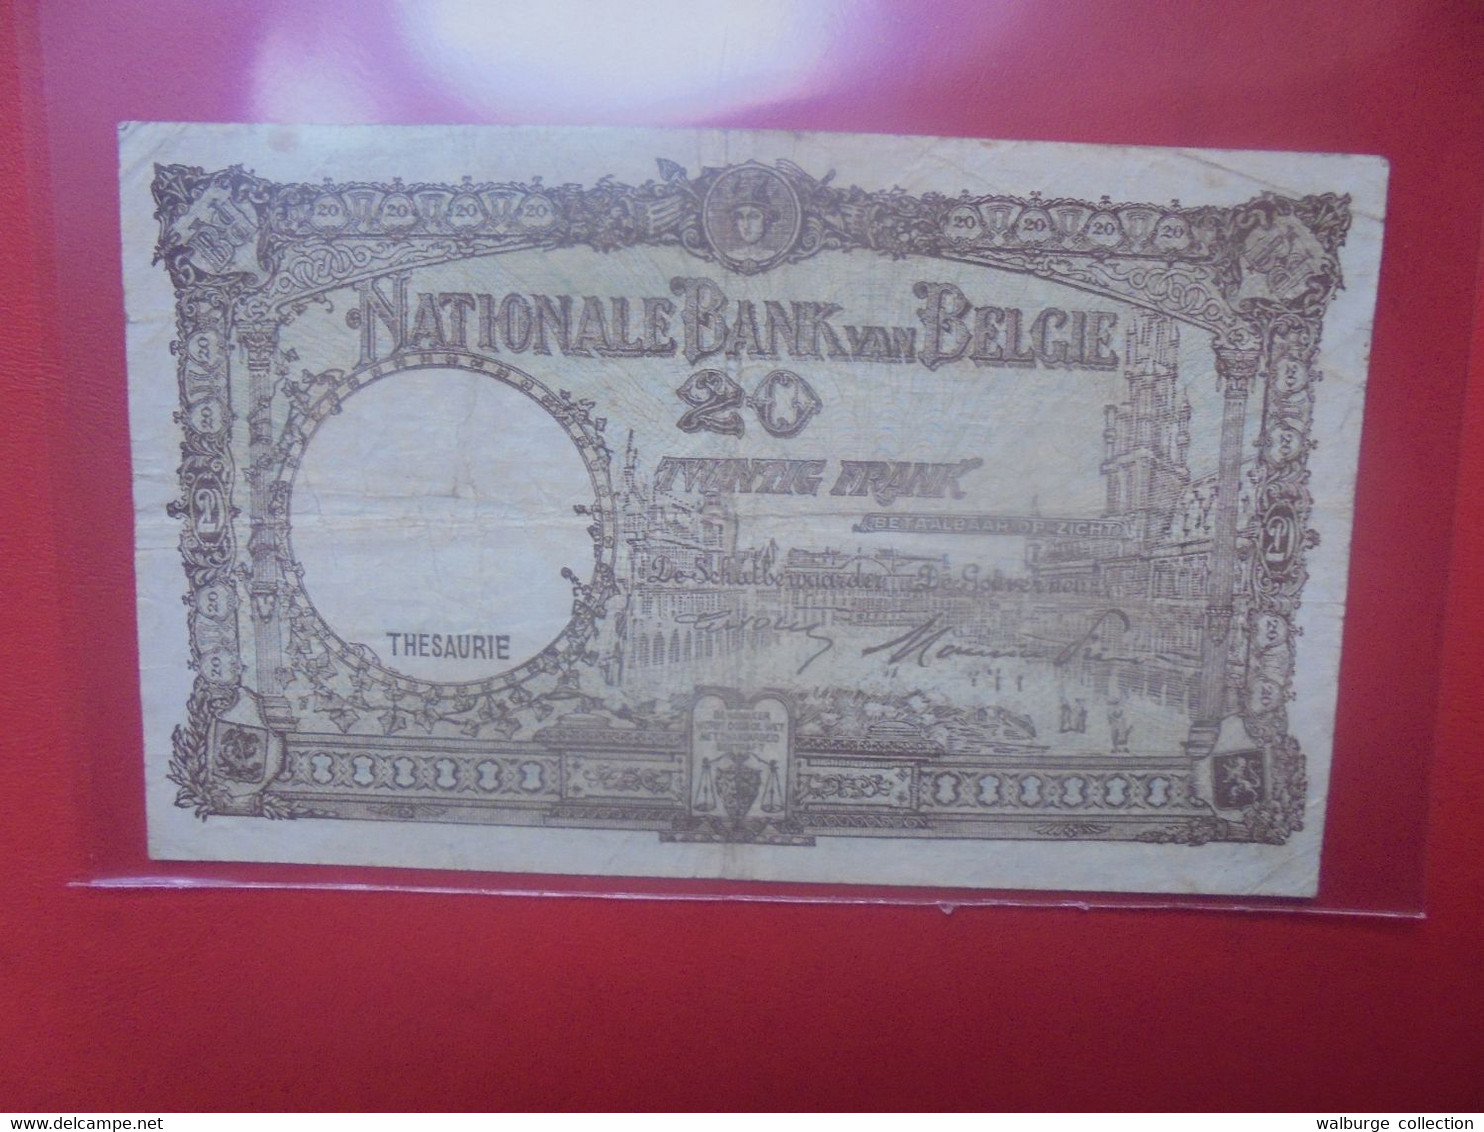 BELGIQUE 20 Francs 18-4-47 Circuler (B.18) - 20 Francos